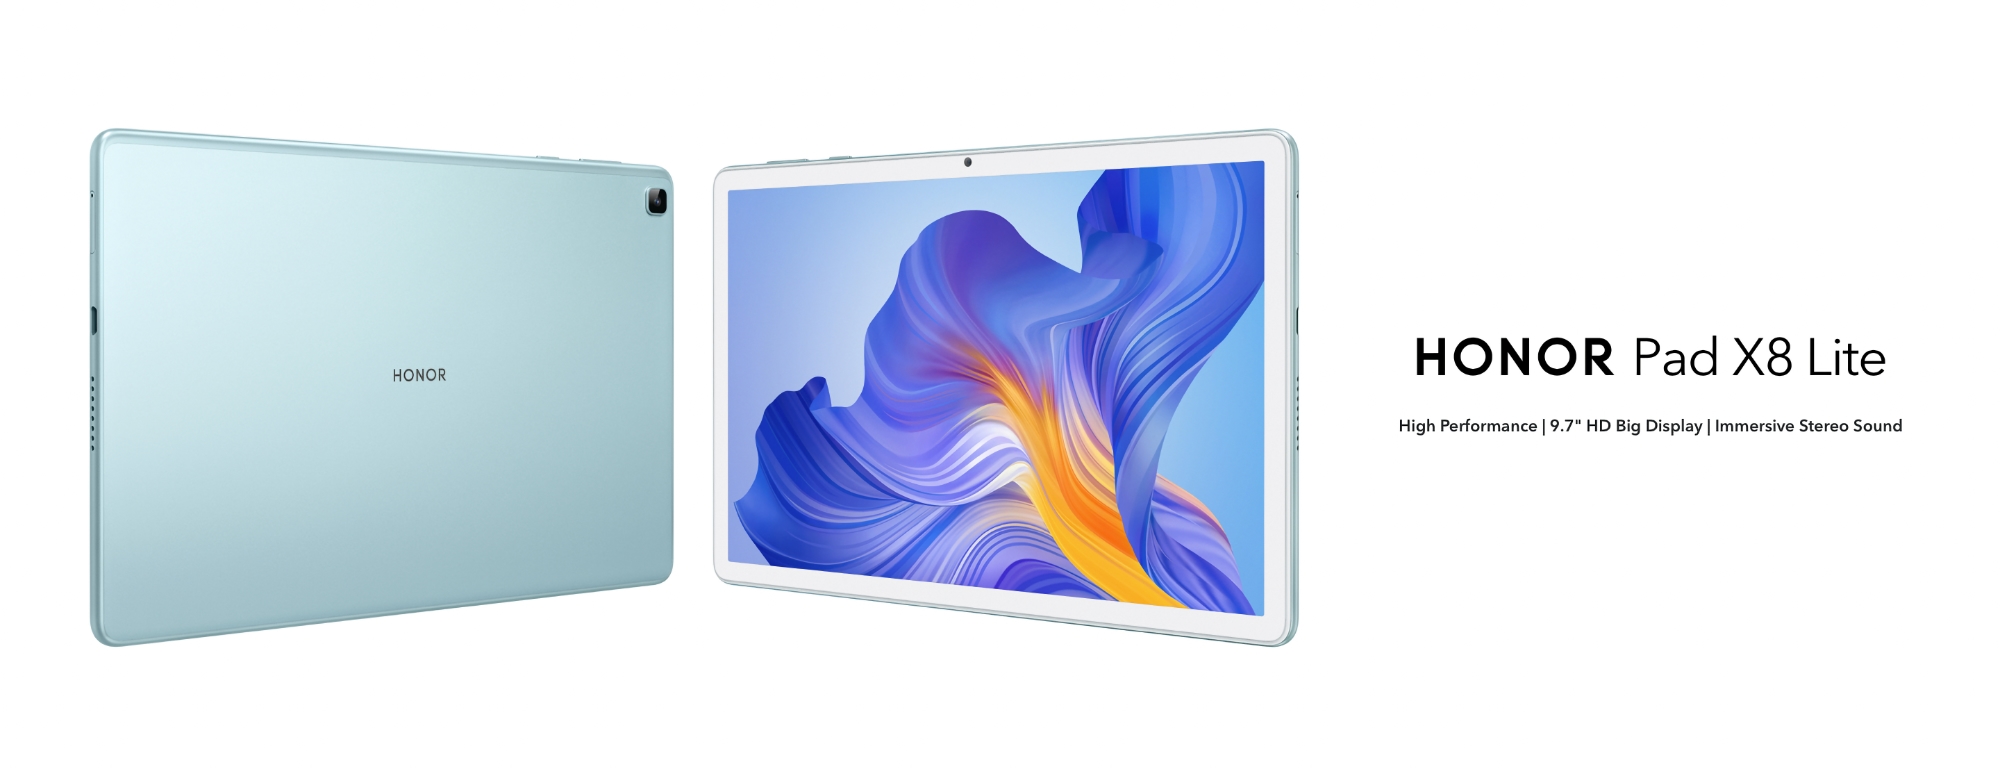 Honor Pad X8 Lite: tablet con pantalla de 9,7 pulgadas, chip MediaTek Helio G80 y batería de 5100mAh